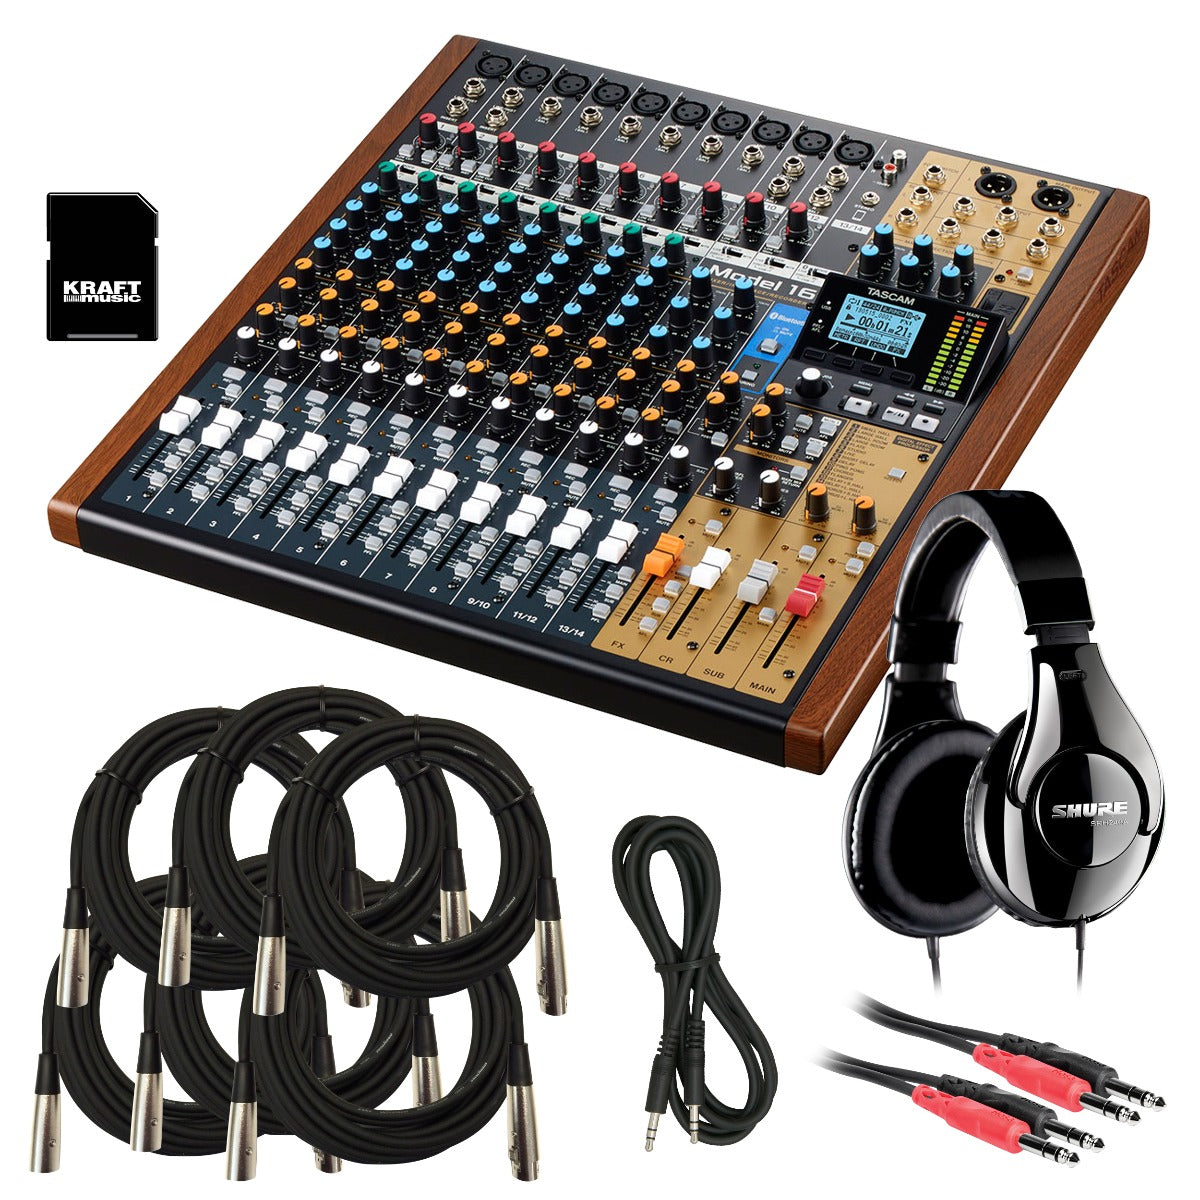 n-Track Studio EX 7 - Professional DAW - Audio Recording